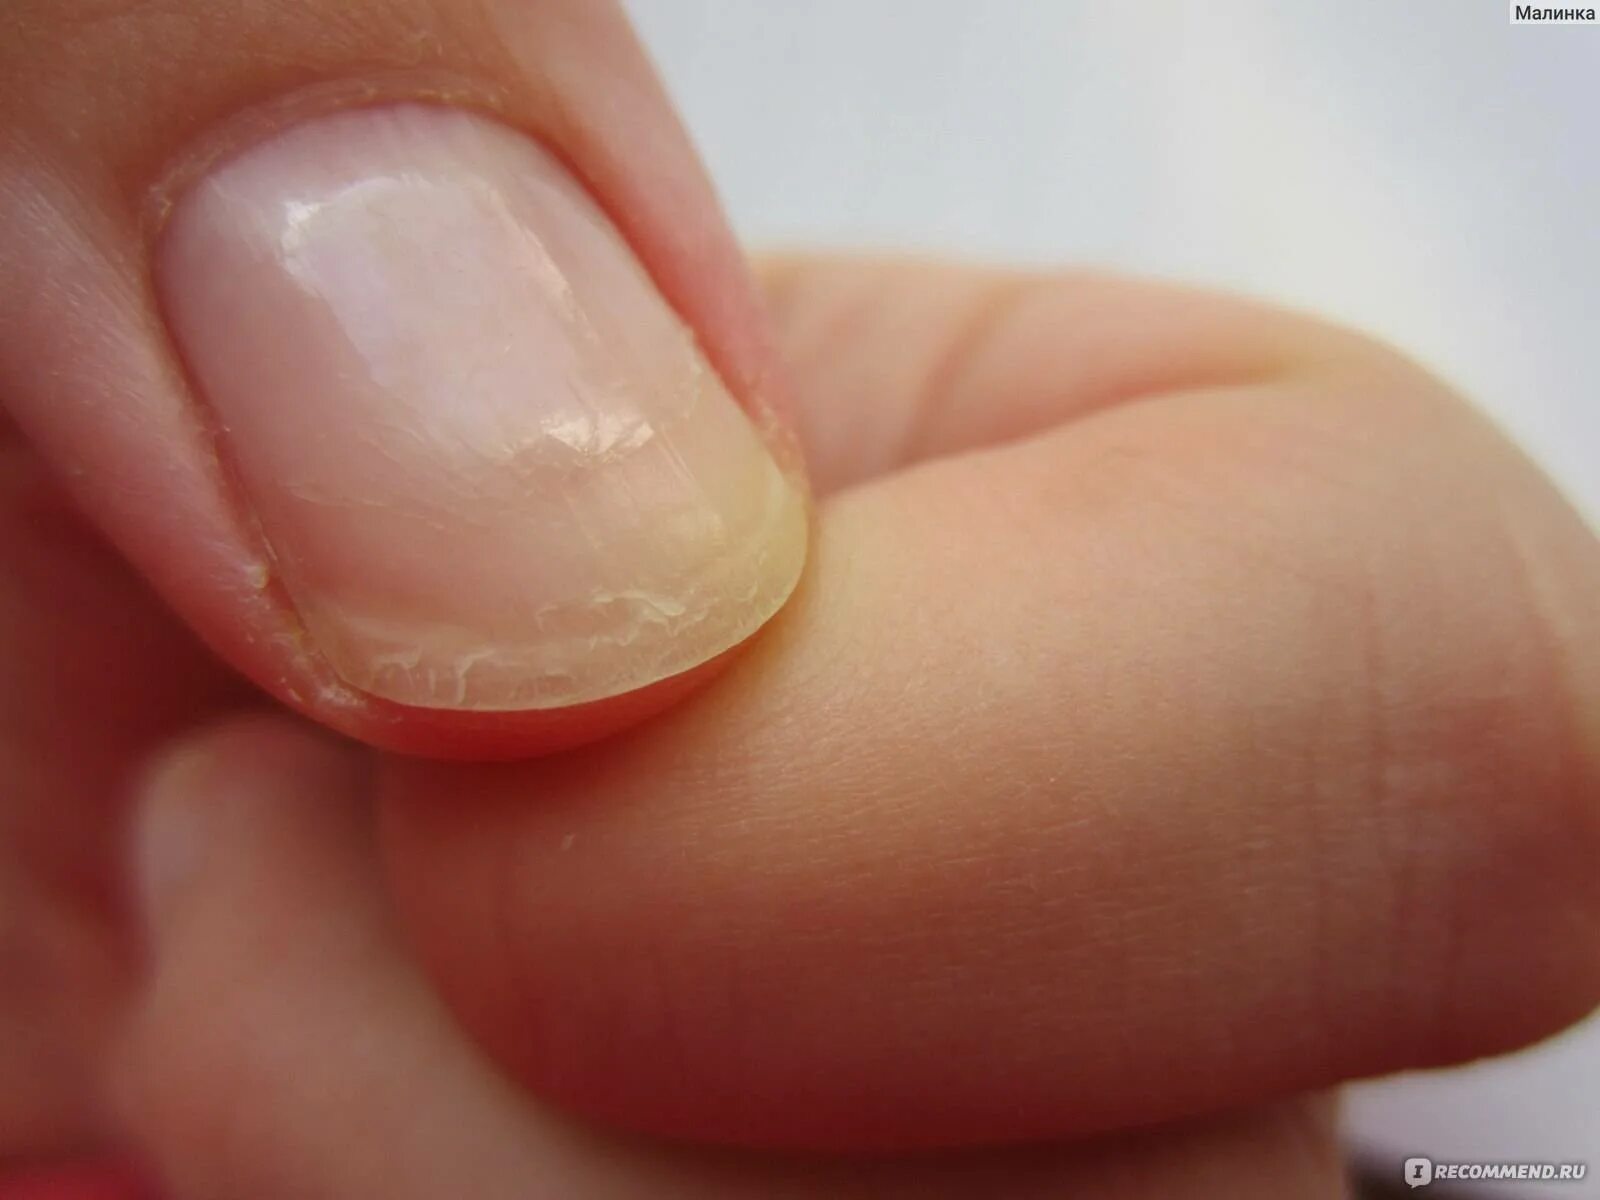 Ногти тонкие мягкие что делать. Онихошизис ногтевой пластины.